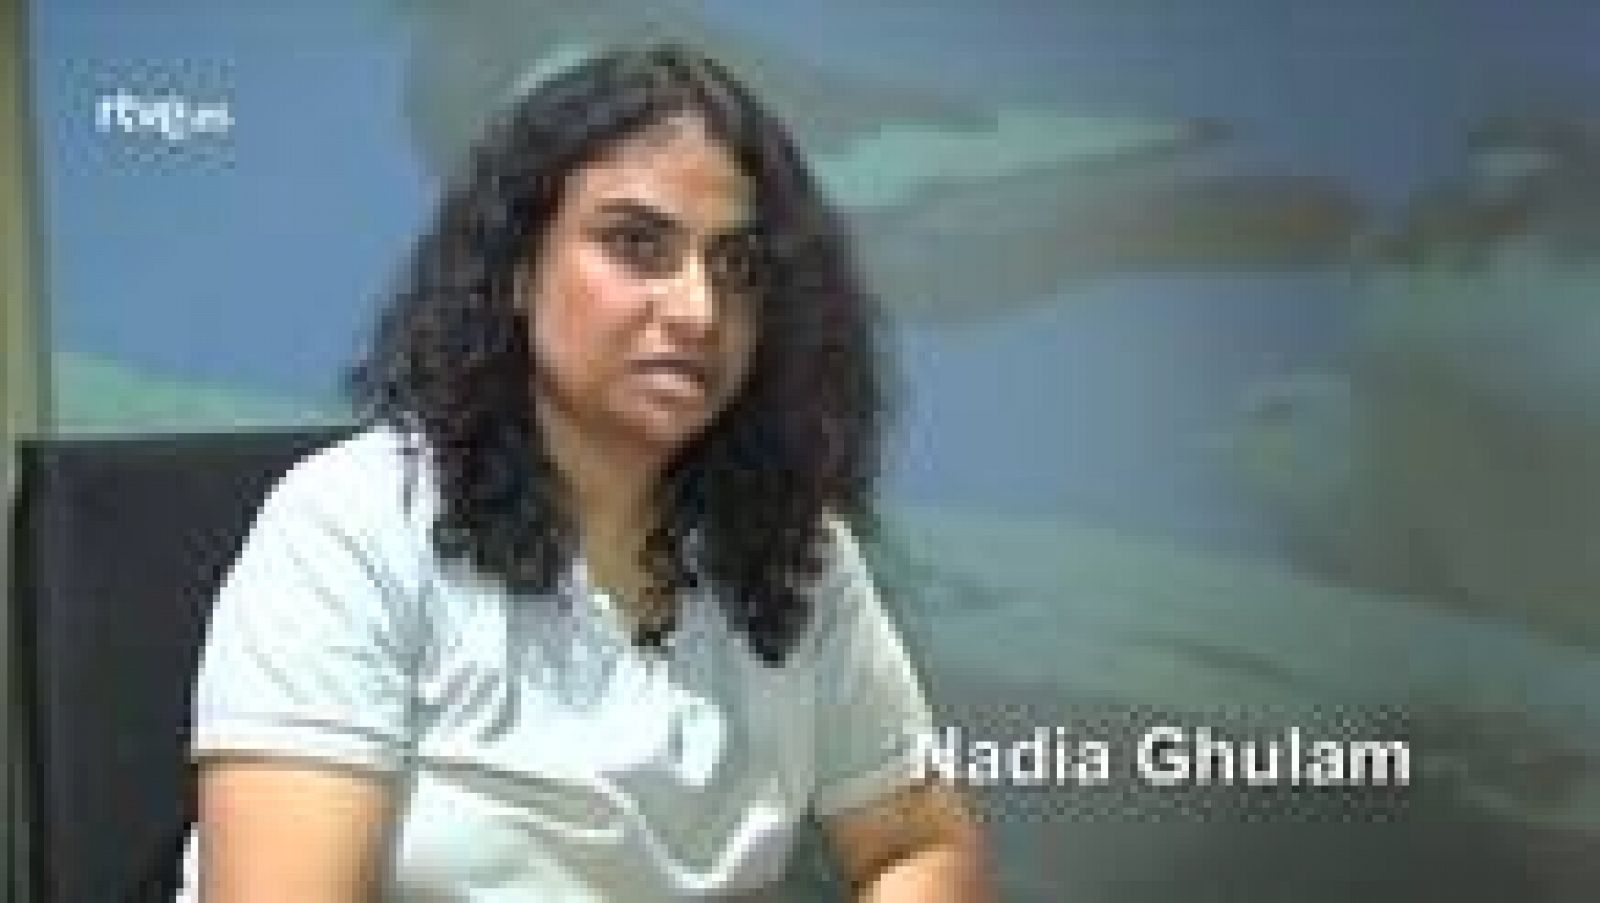  Atención obras - Hablamos con Nadia Ghulam: entrevista completa